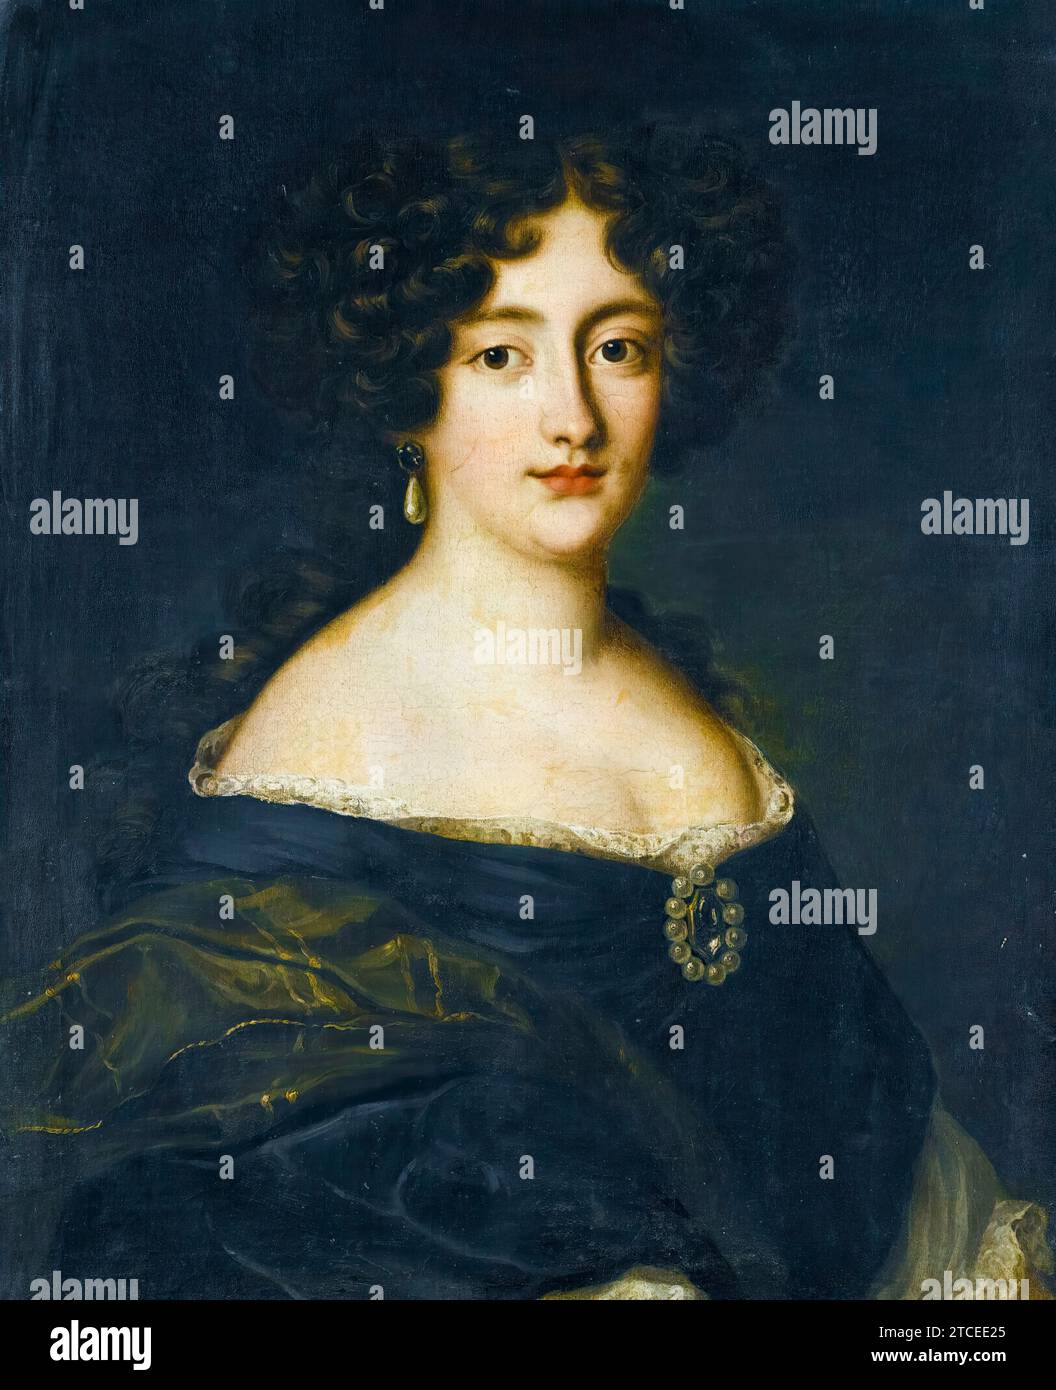 Ortensia Mancini, Duchessa di Mazzarino (1646-1699), portrait à l'huile sur toile de Jacob Ferdinand Voet, avant 1689 Banque D'Images